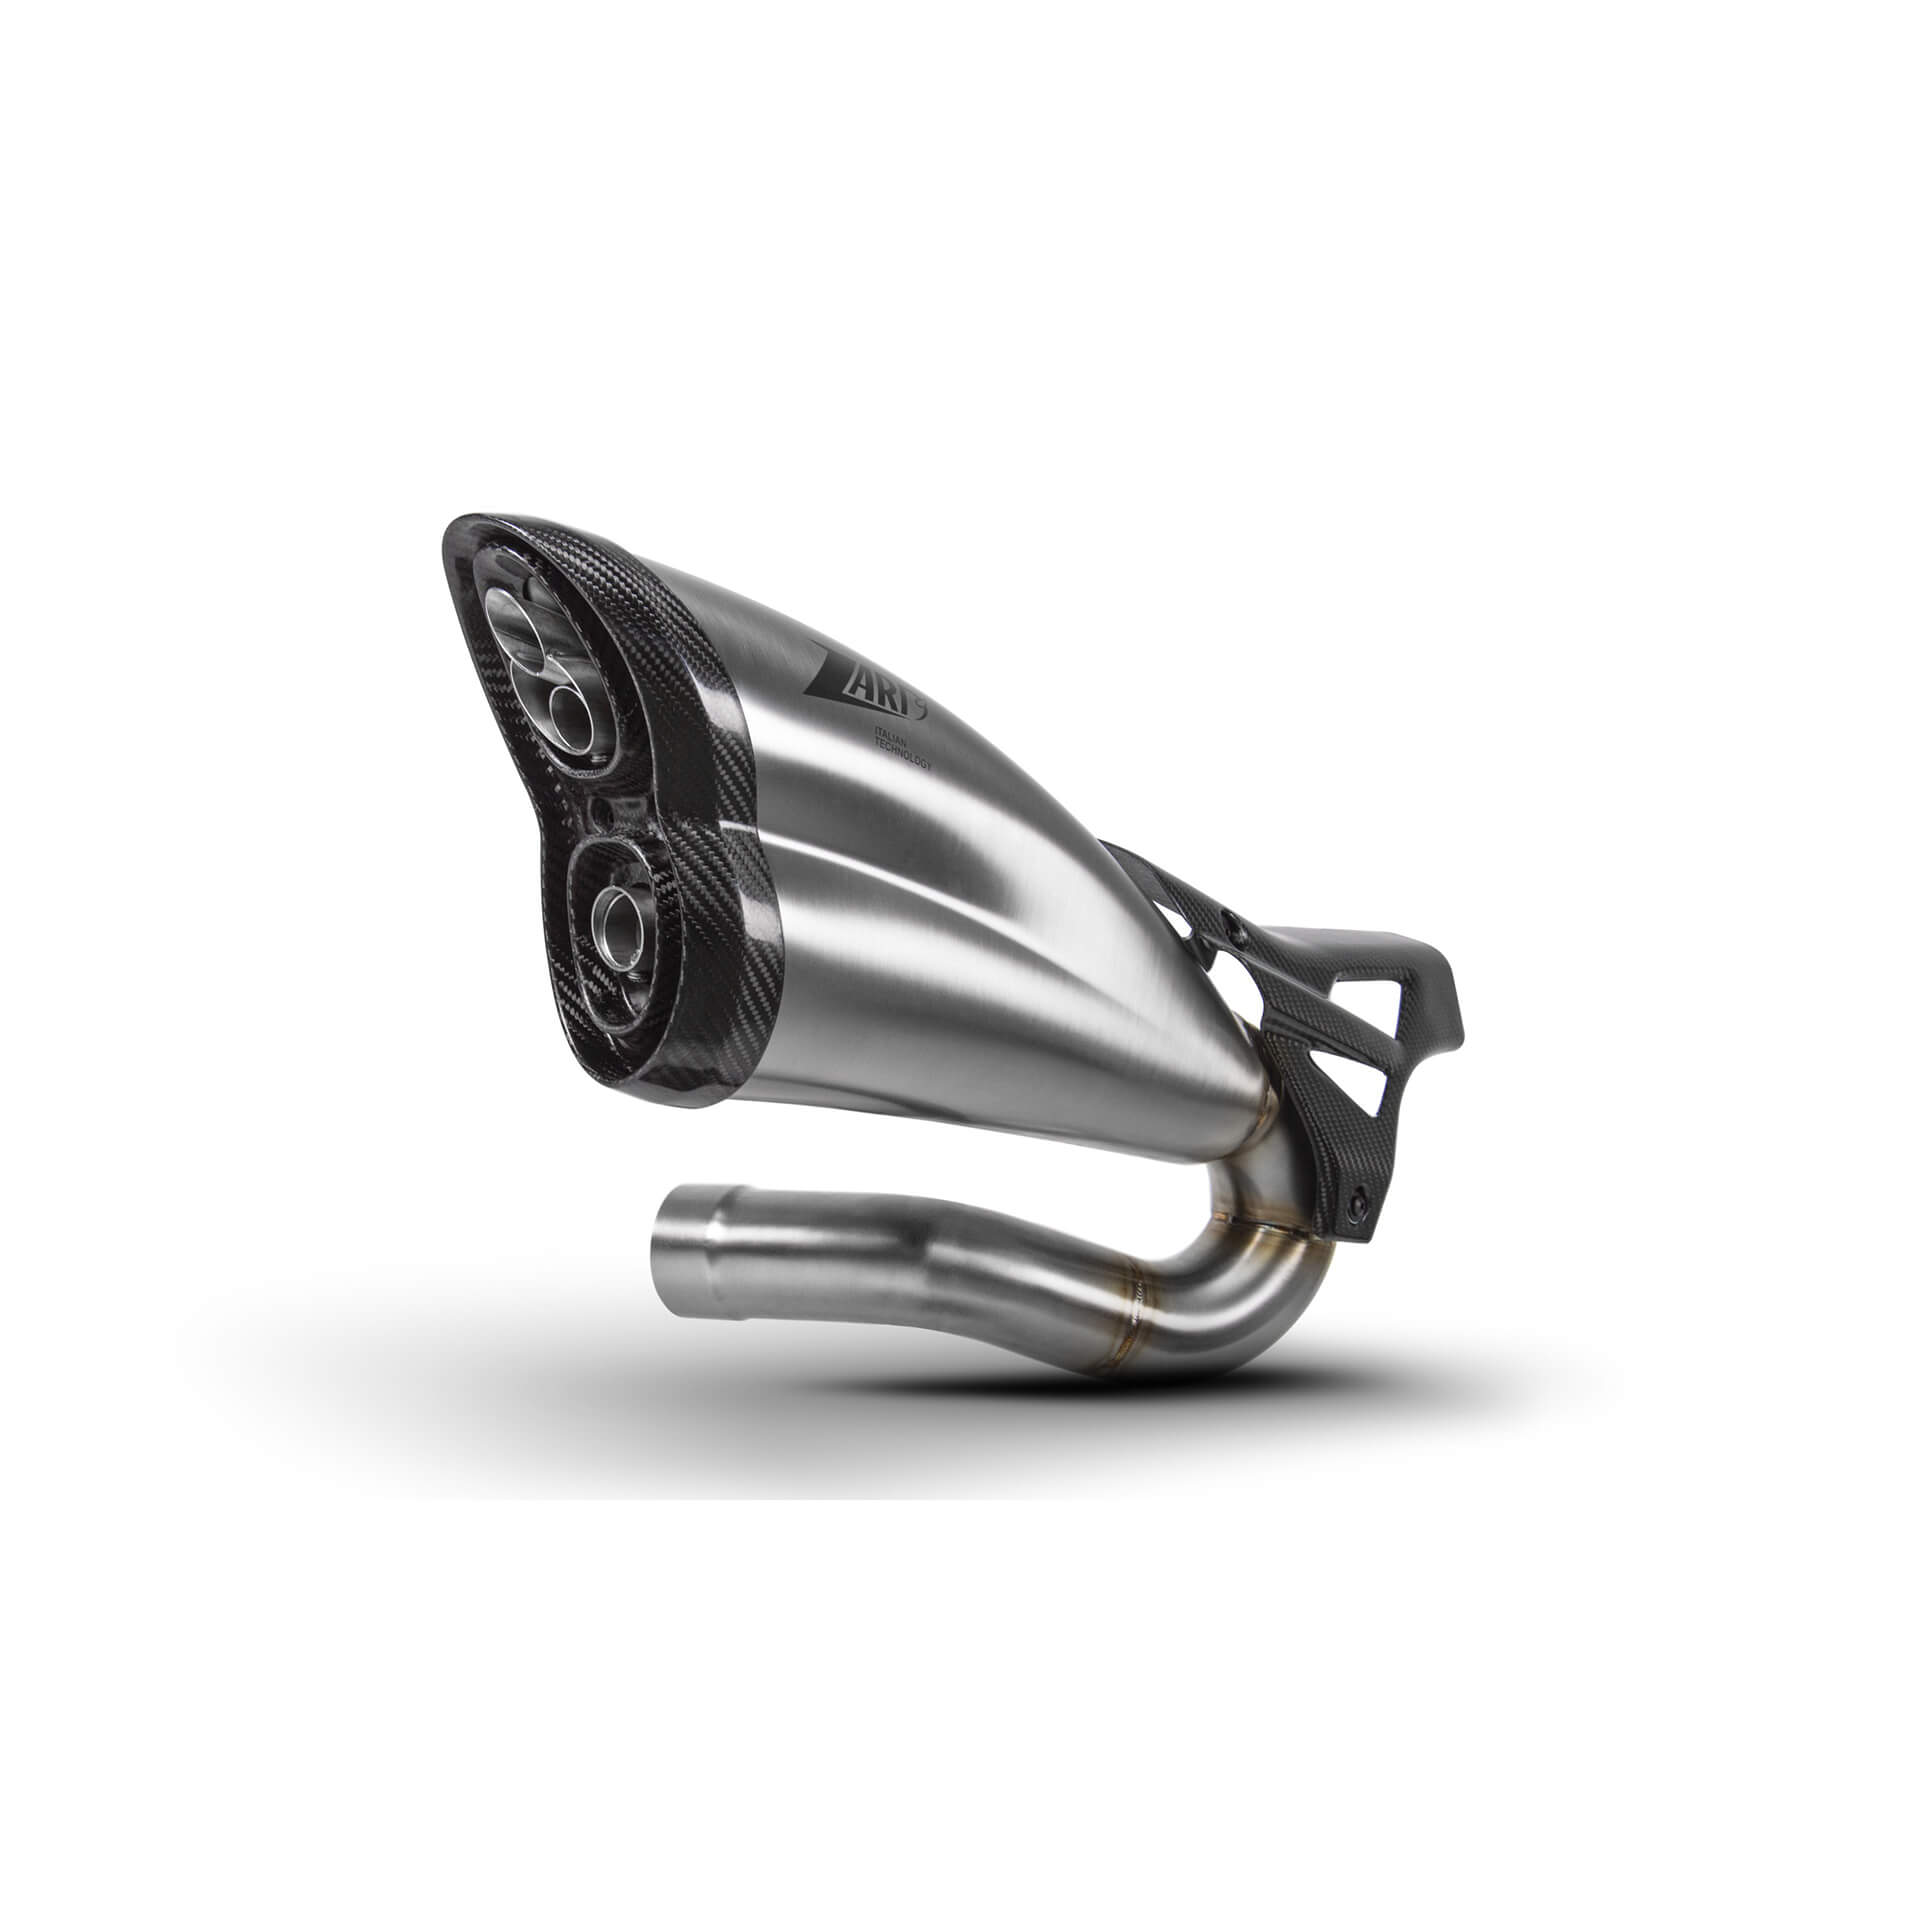 Zard Zard-Triumph Rocket Iii My. 2020-2021 Slip On 3-1, Racing  - Silver